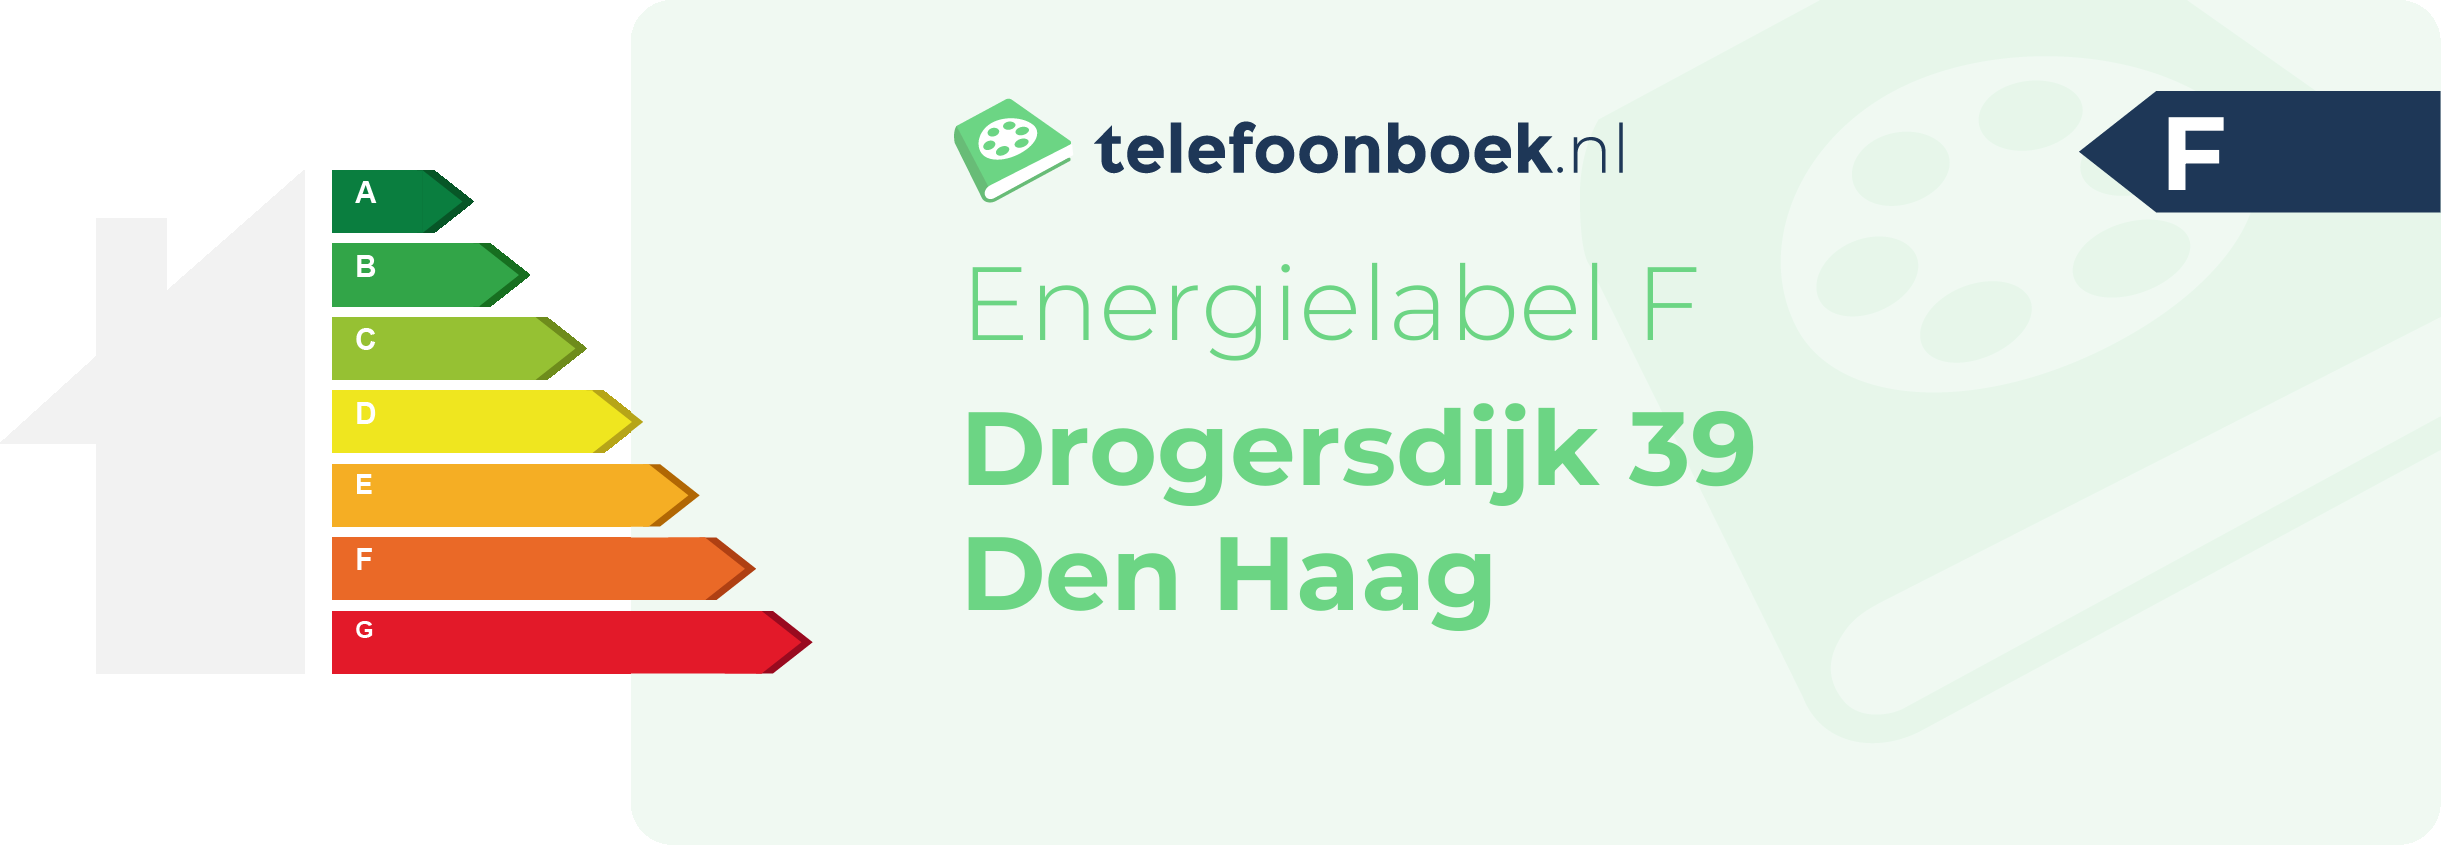 Energielabel Drogersdijk 39 Den Haag